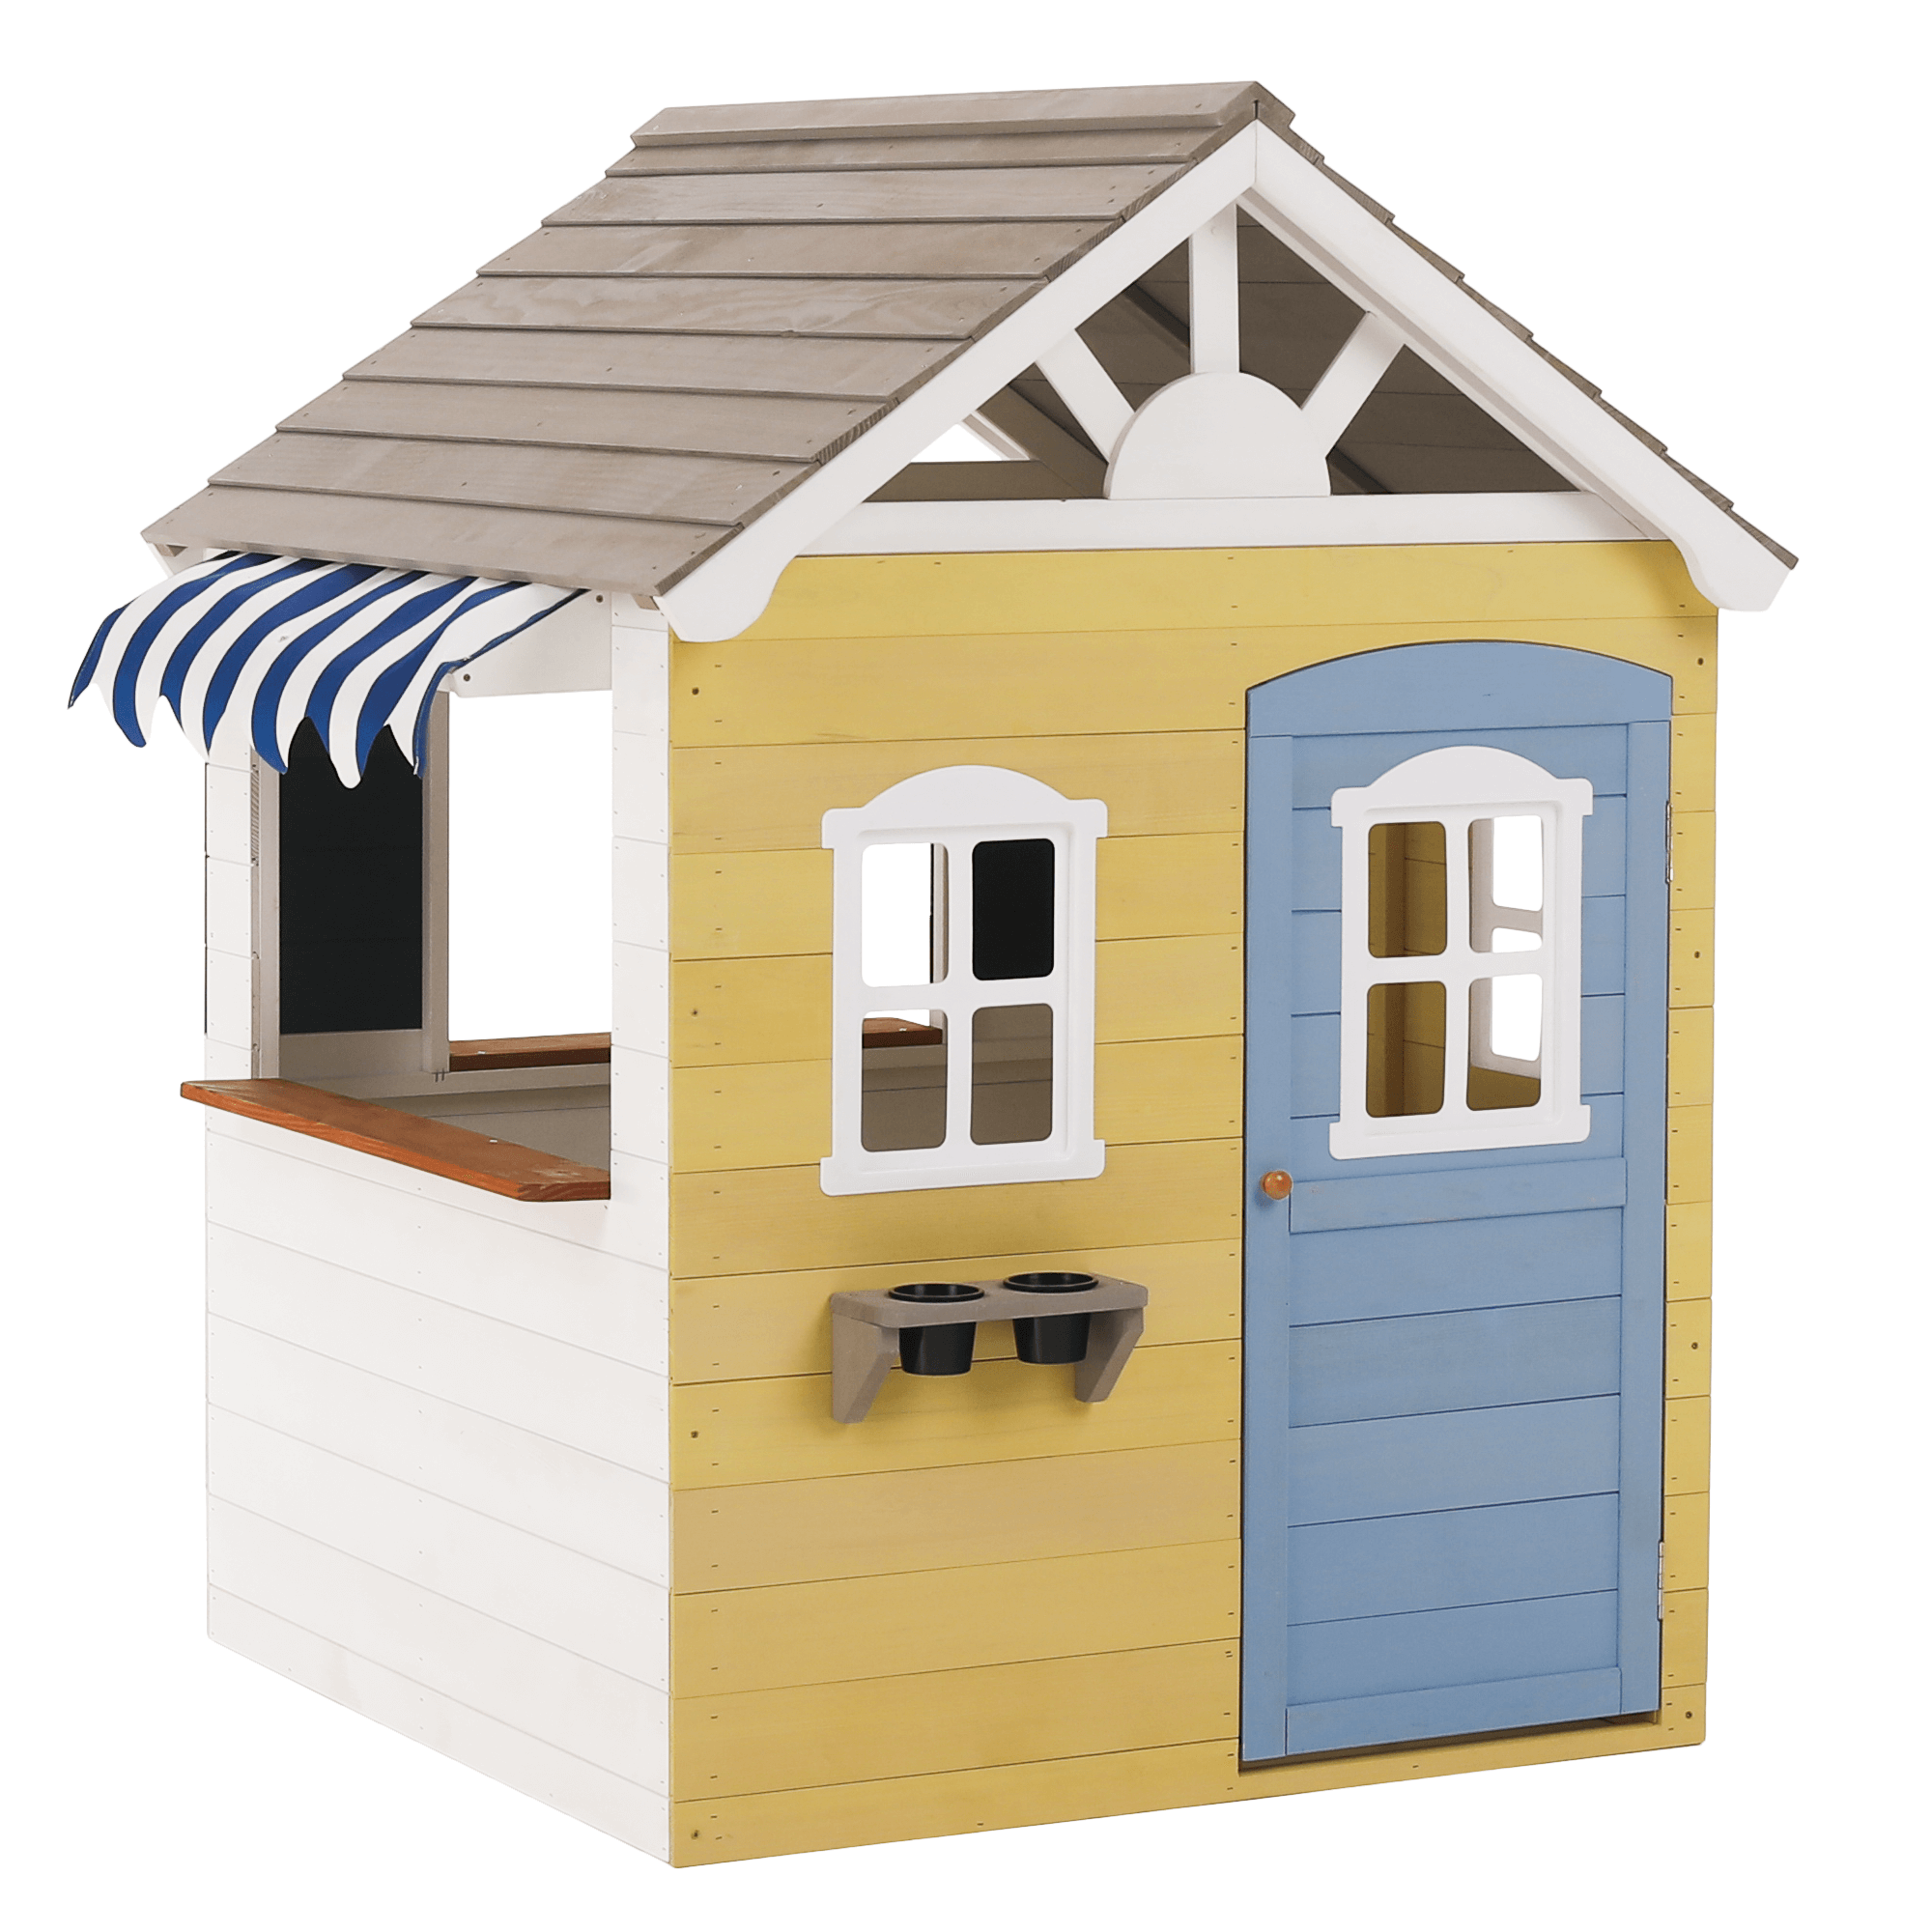 Fából készült kerti ház gyerekeknek, fehér/szürke/sárga/kék, nesko